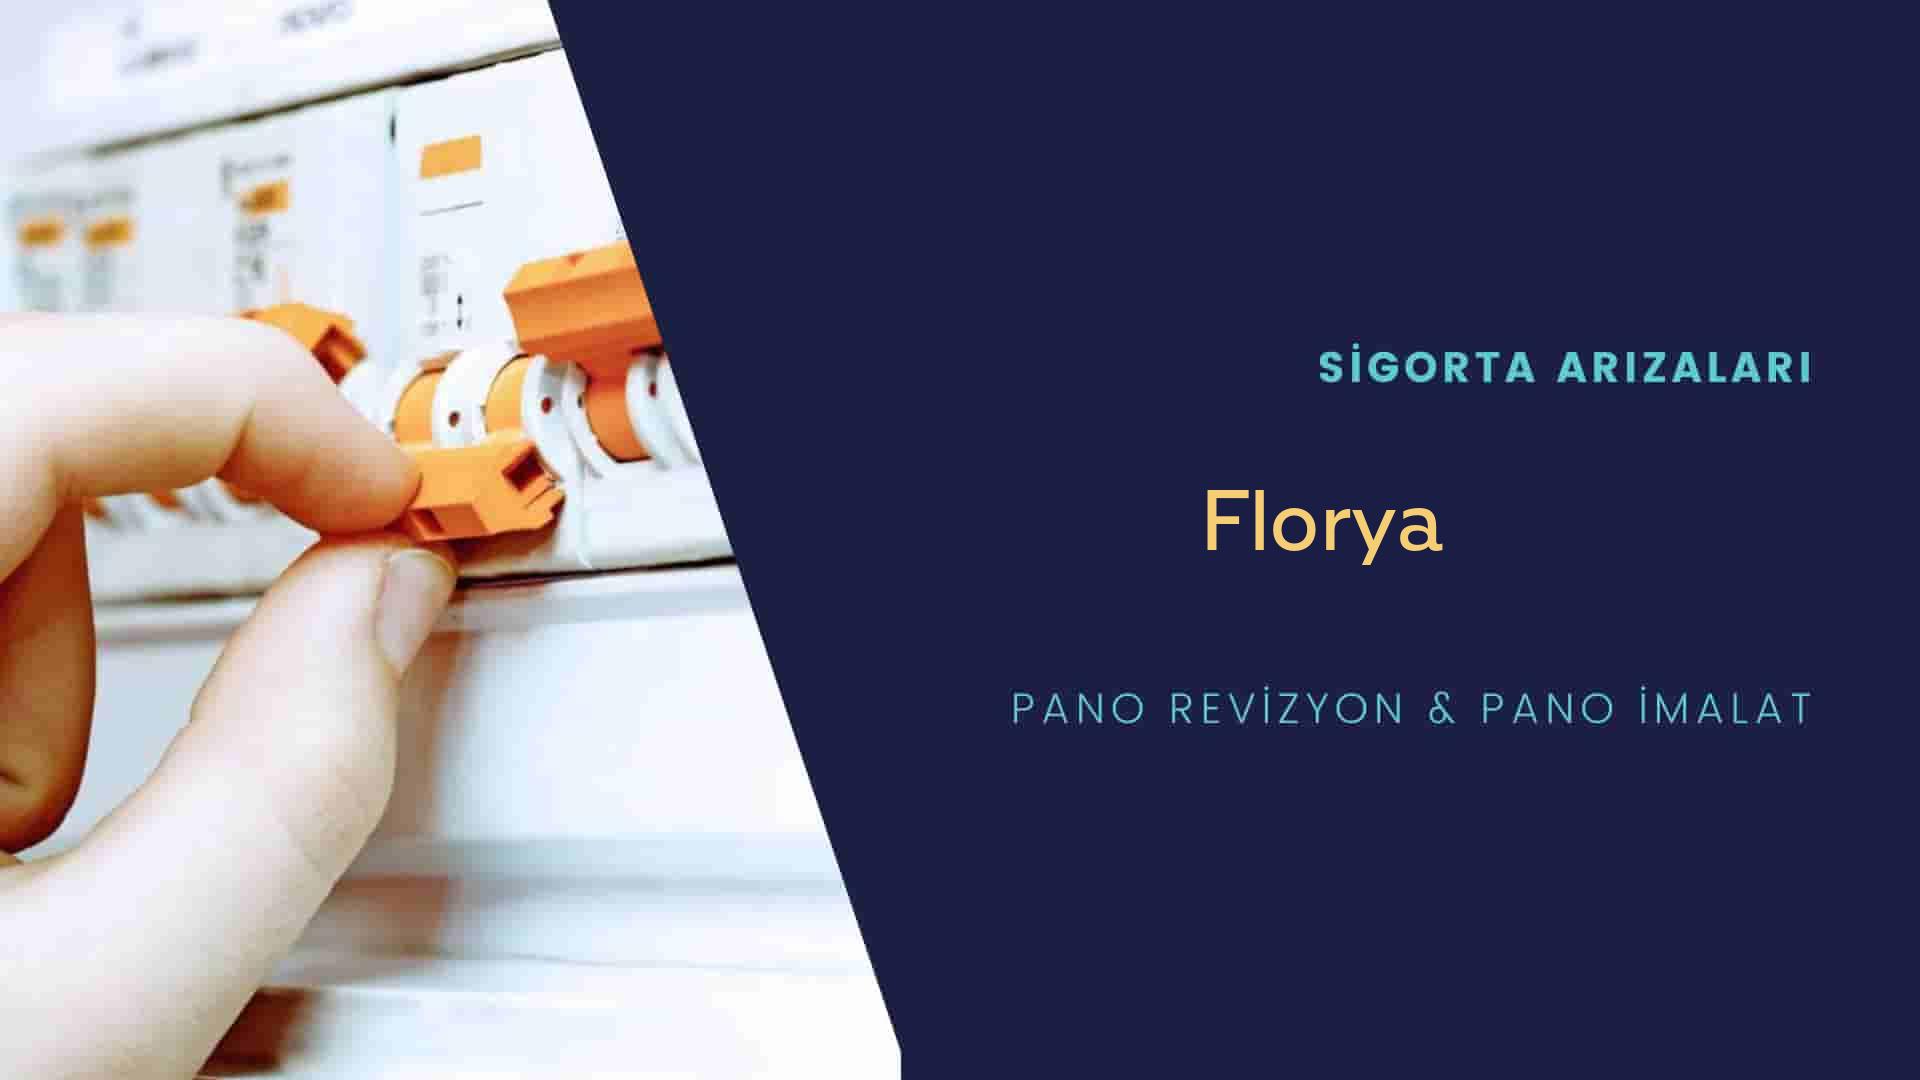 Florya Sigorta Arızaları İçin Profesyonel Elektrikçi ustalarımızı dilediğiniz zaman arayabilir talepte bulunabilirsiniz.